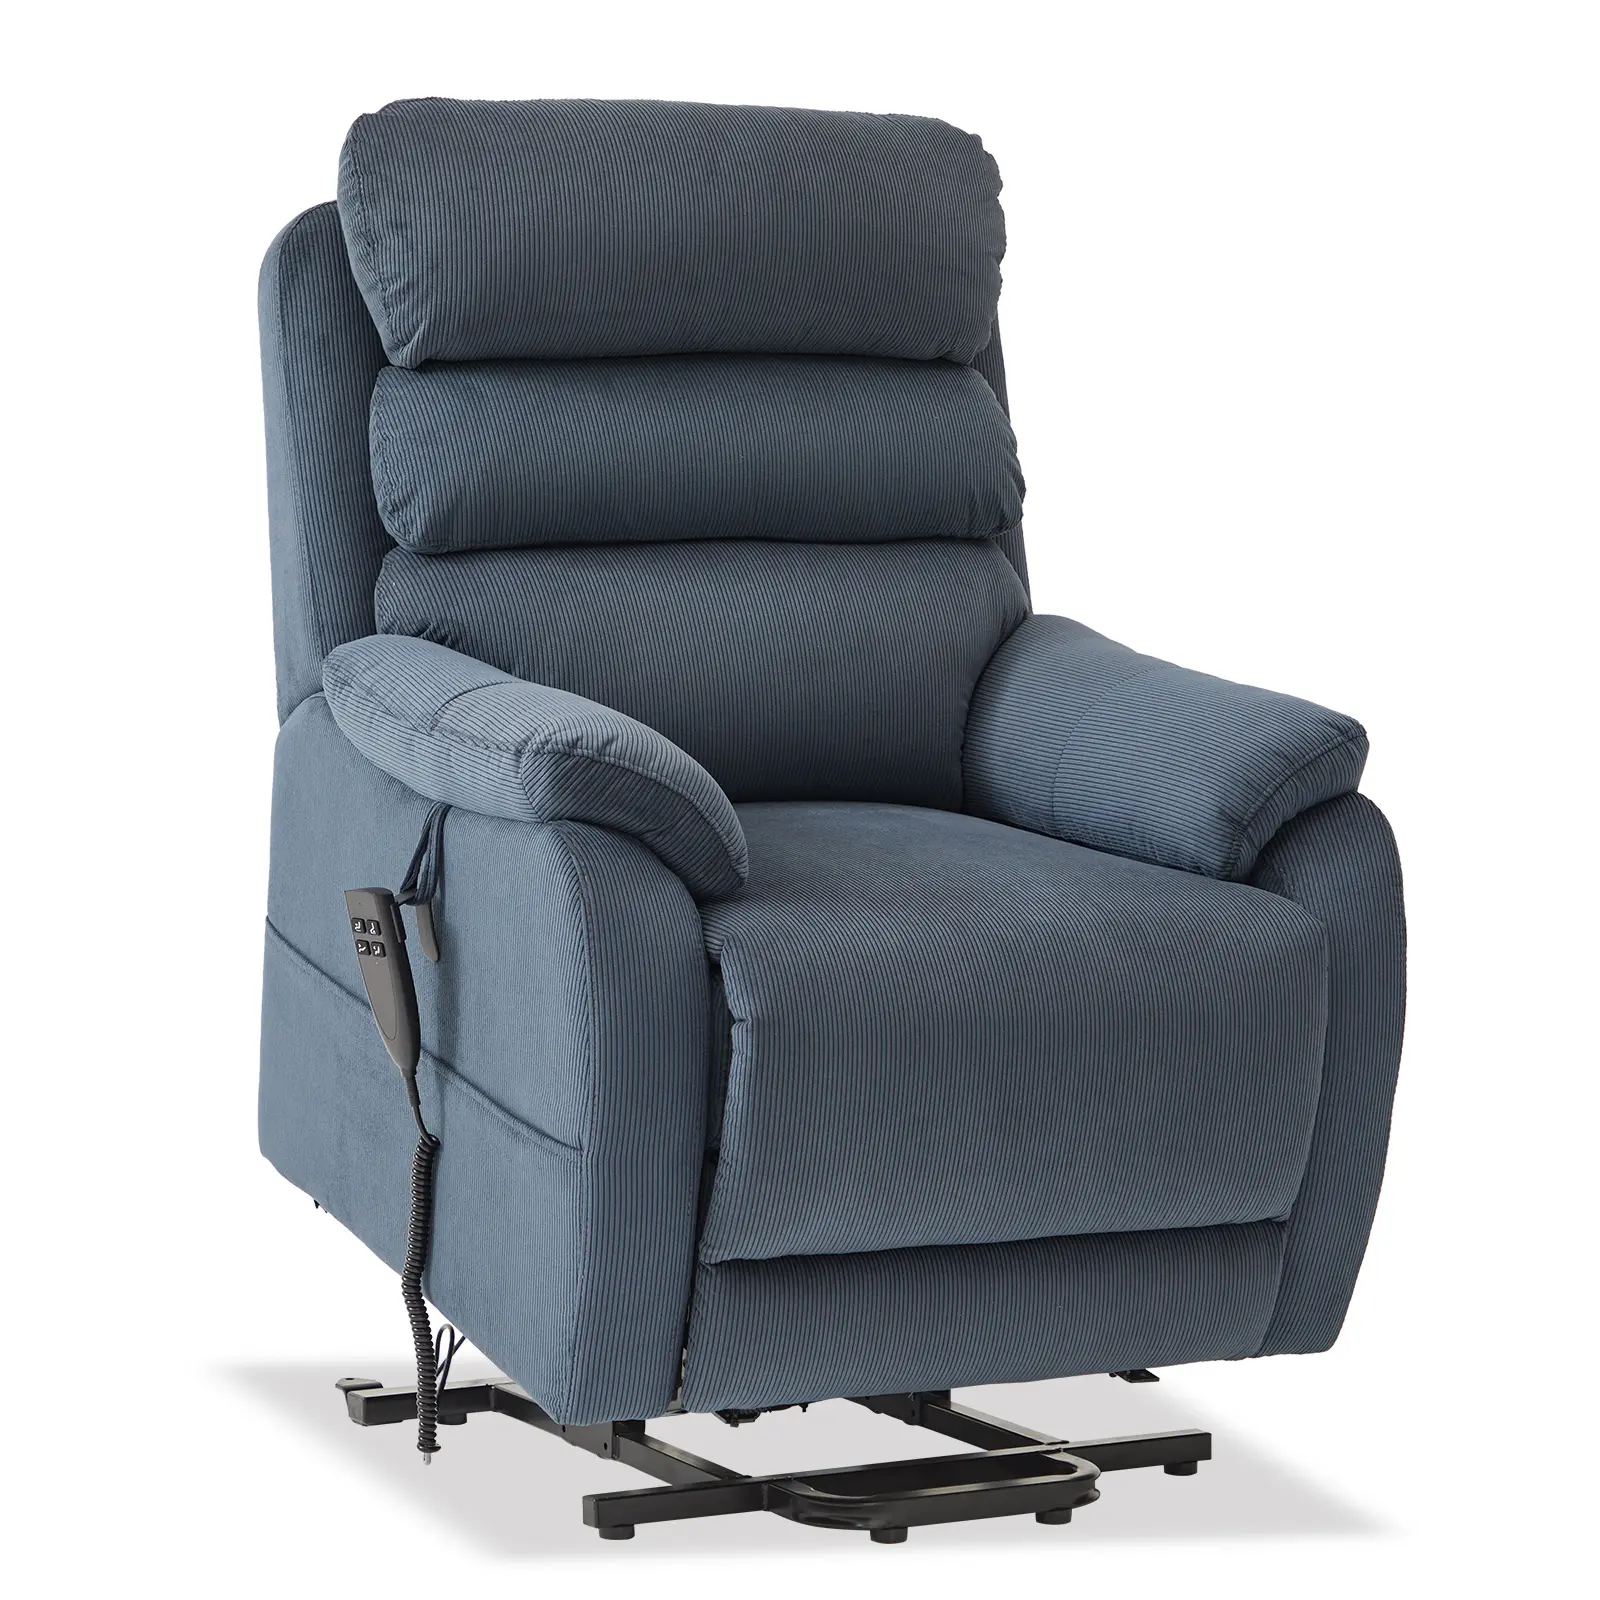 CJSmart kursi angkat rumah, kursi malas untuk orang pendek, menempatkan Daya datar Sofa dengan penyesuaian posisi tak terbatas dan saku samping